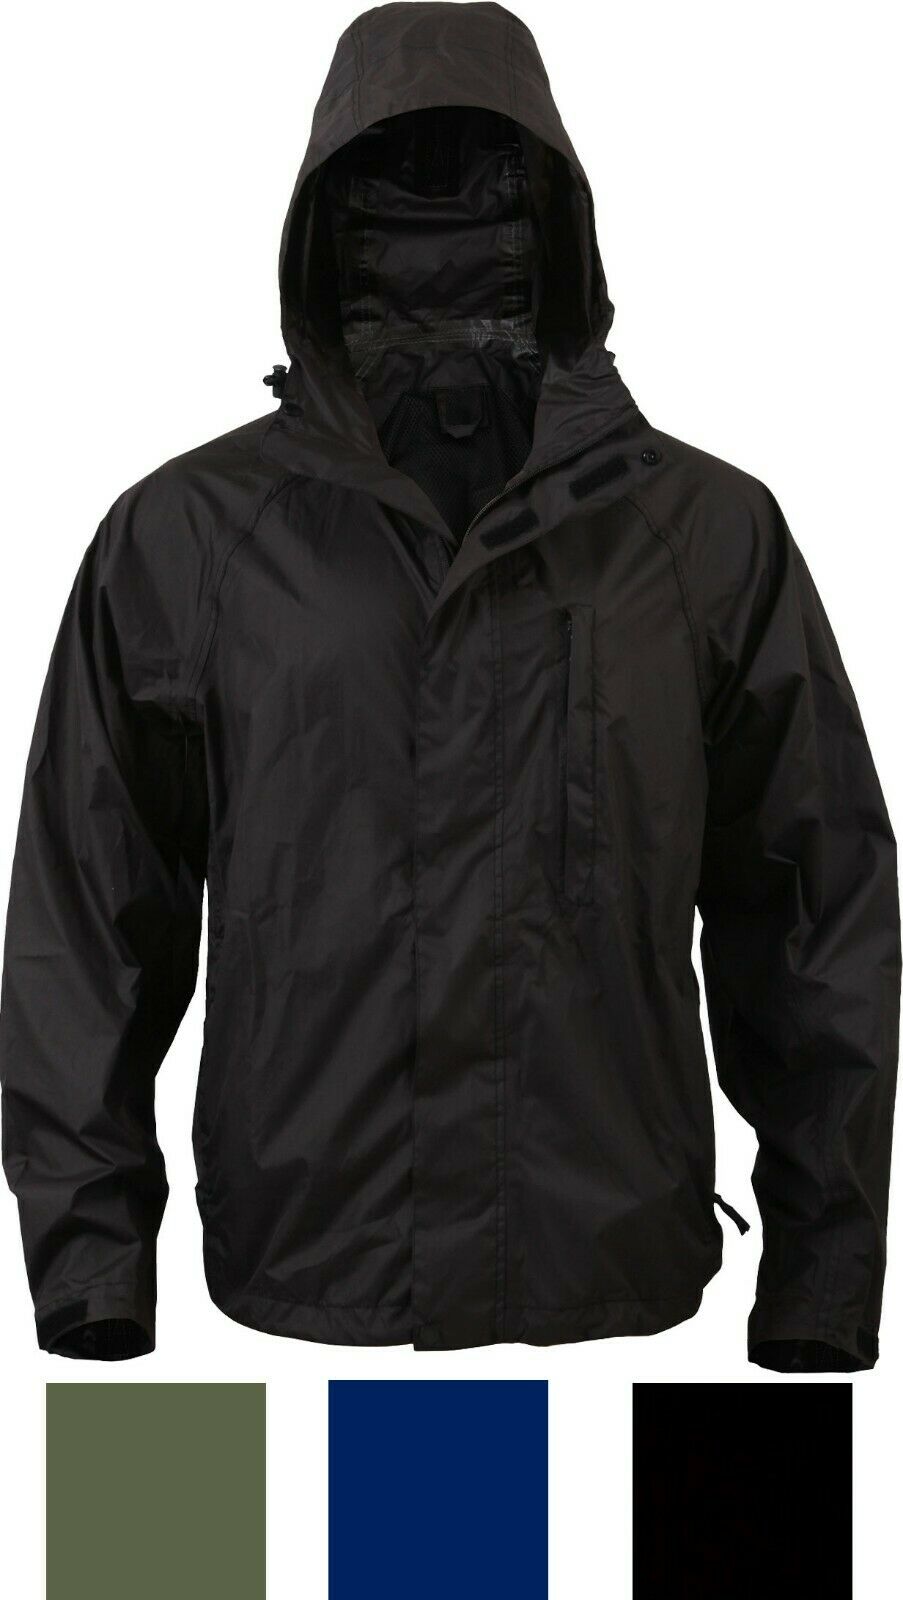 Rothco Black Security Nylon Rain Jacket - 2560 - S